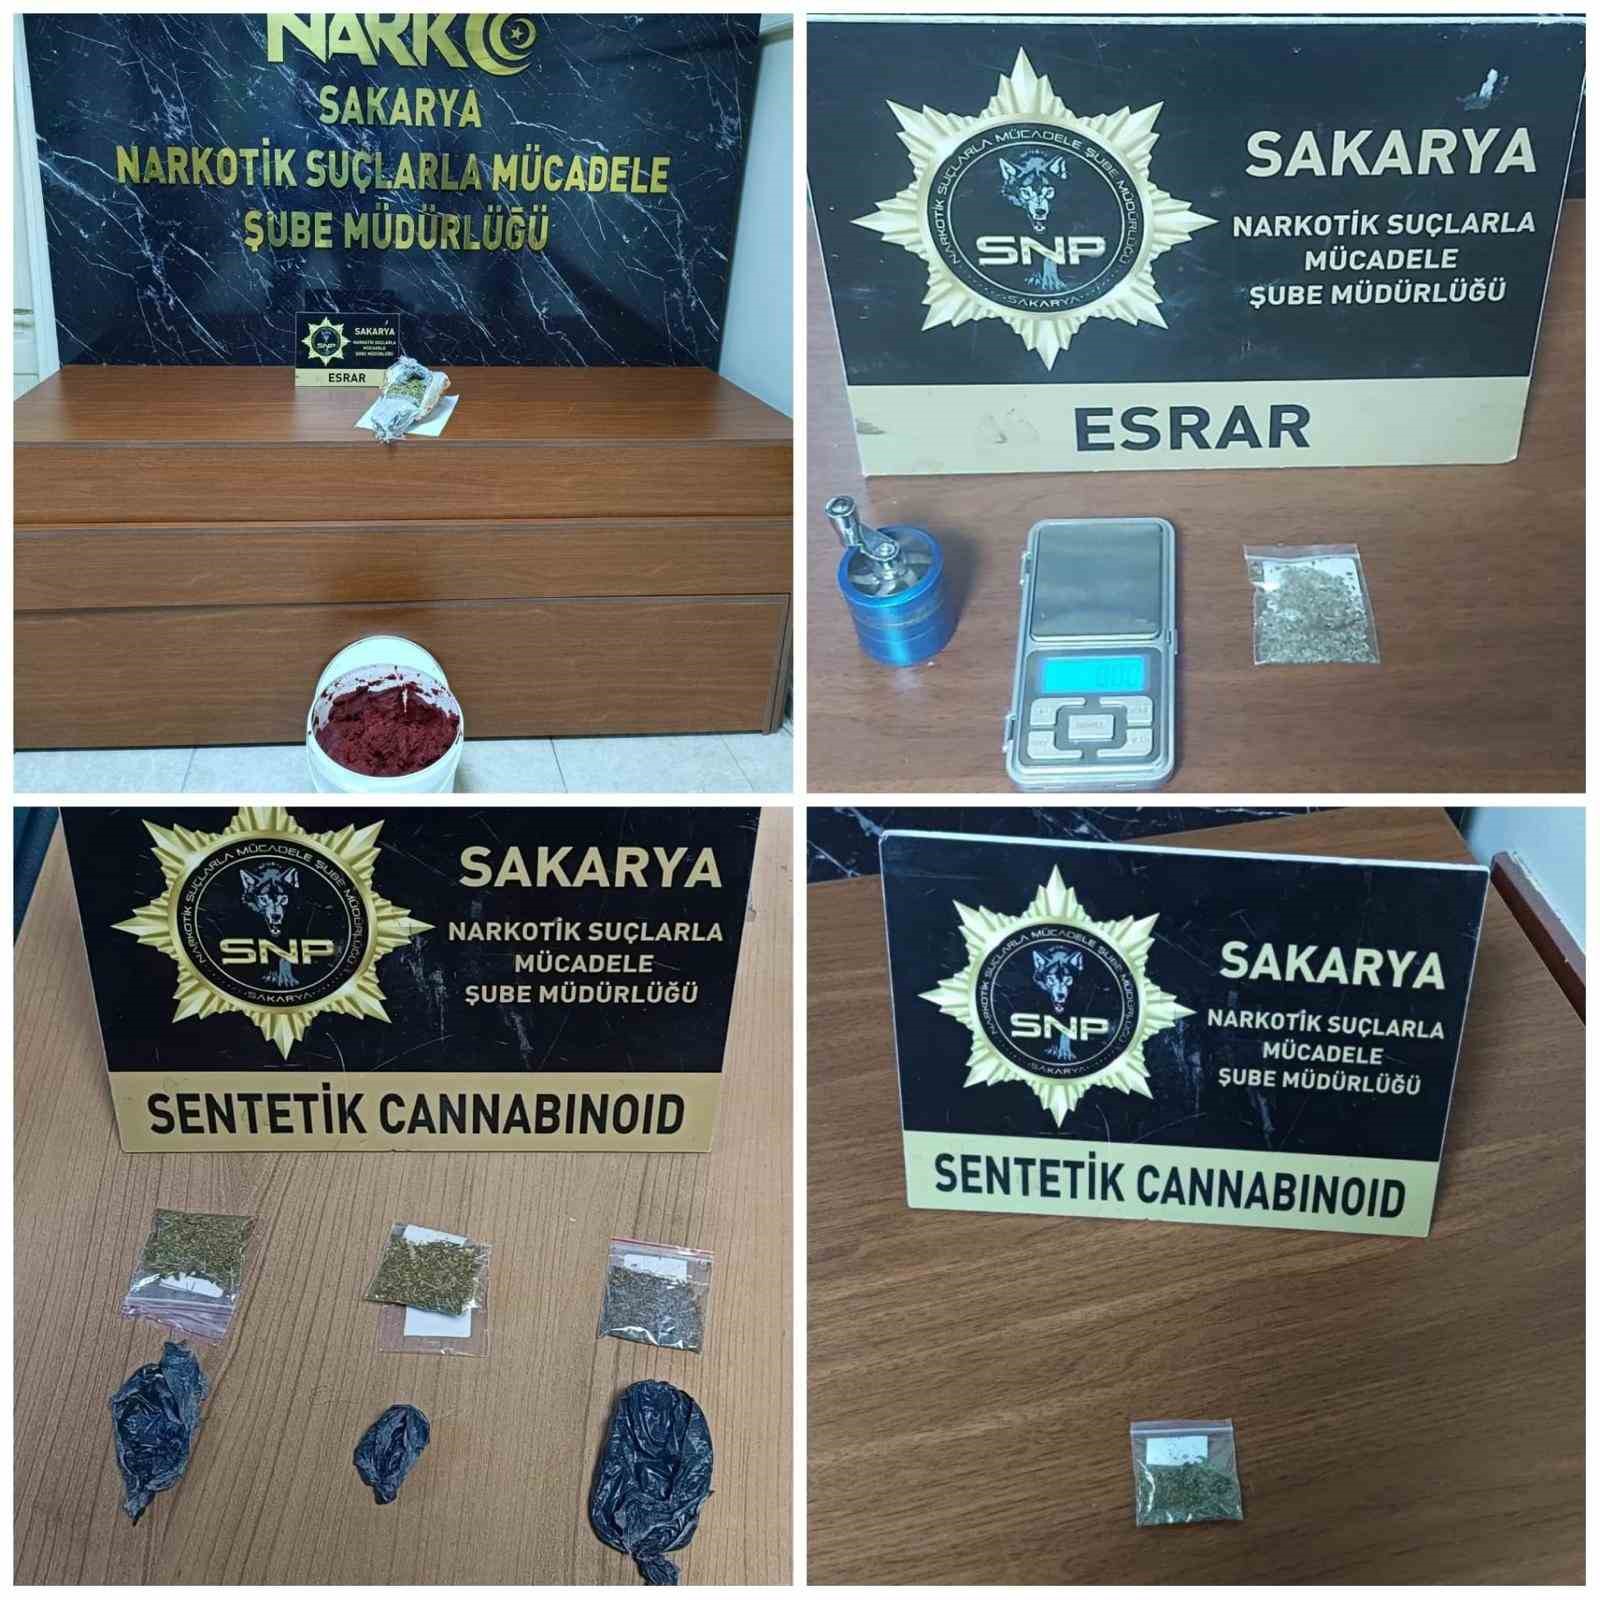 Sakarya’da uyuşturucu operasyonu: 15 gözaltı
